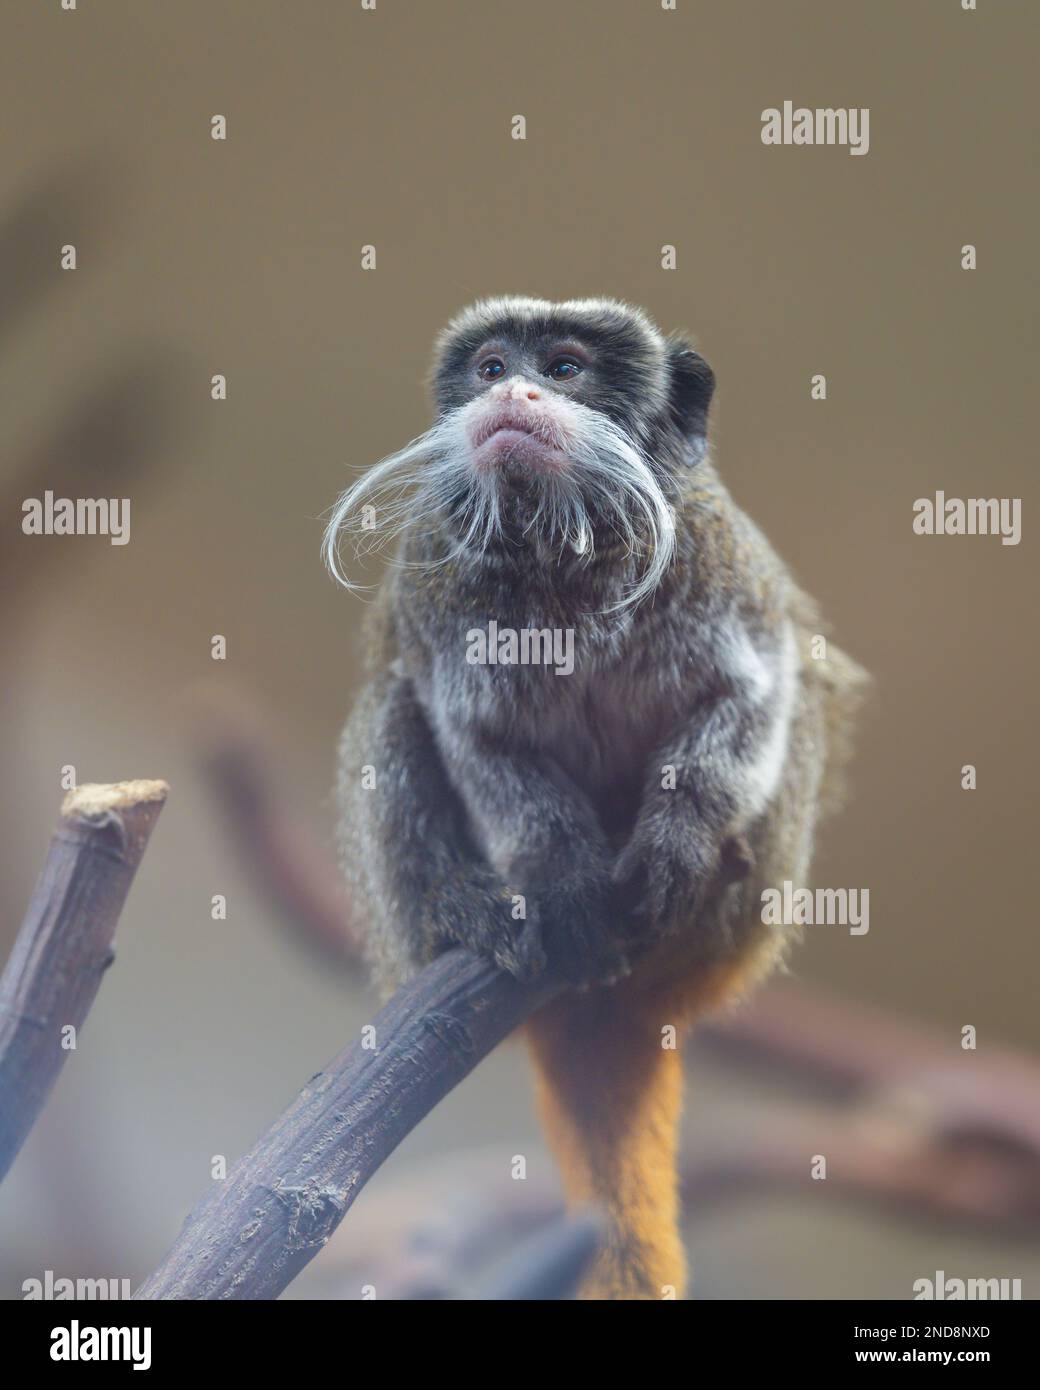 Scimmia imperatore Tamarin (Saguinus imperator) sul ramo con eccezionale, lunga, barba bianca. Foto Stock